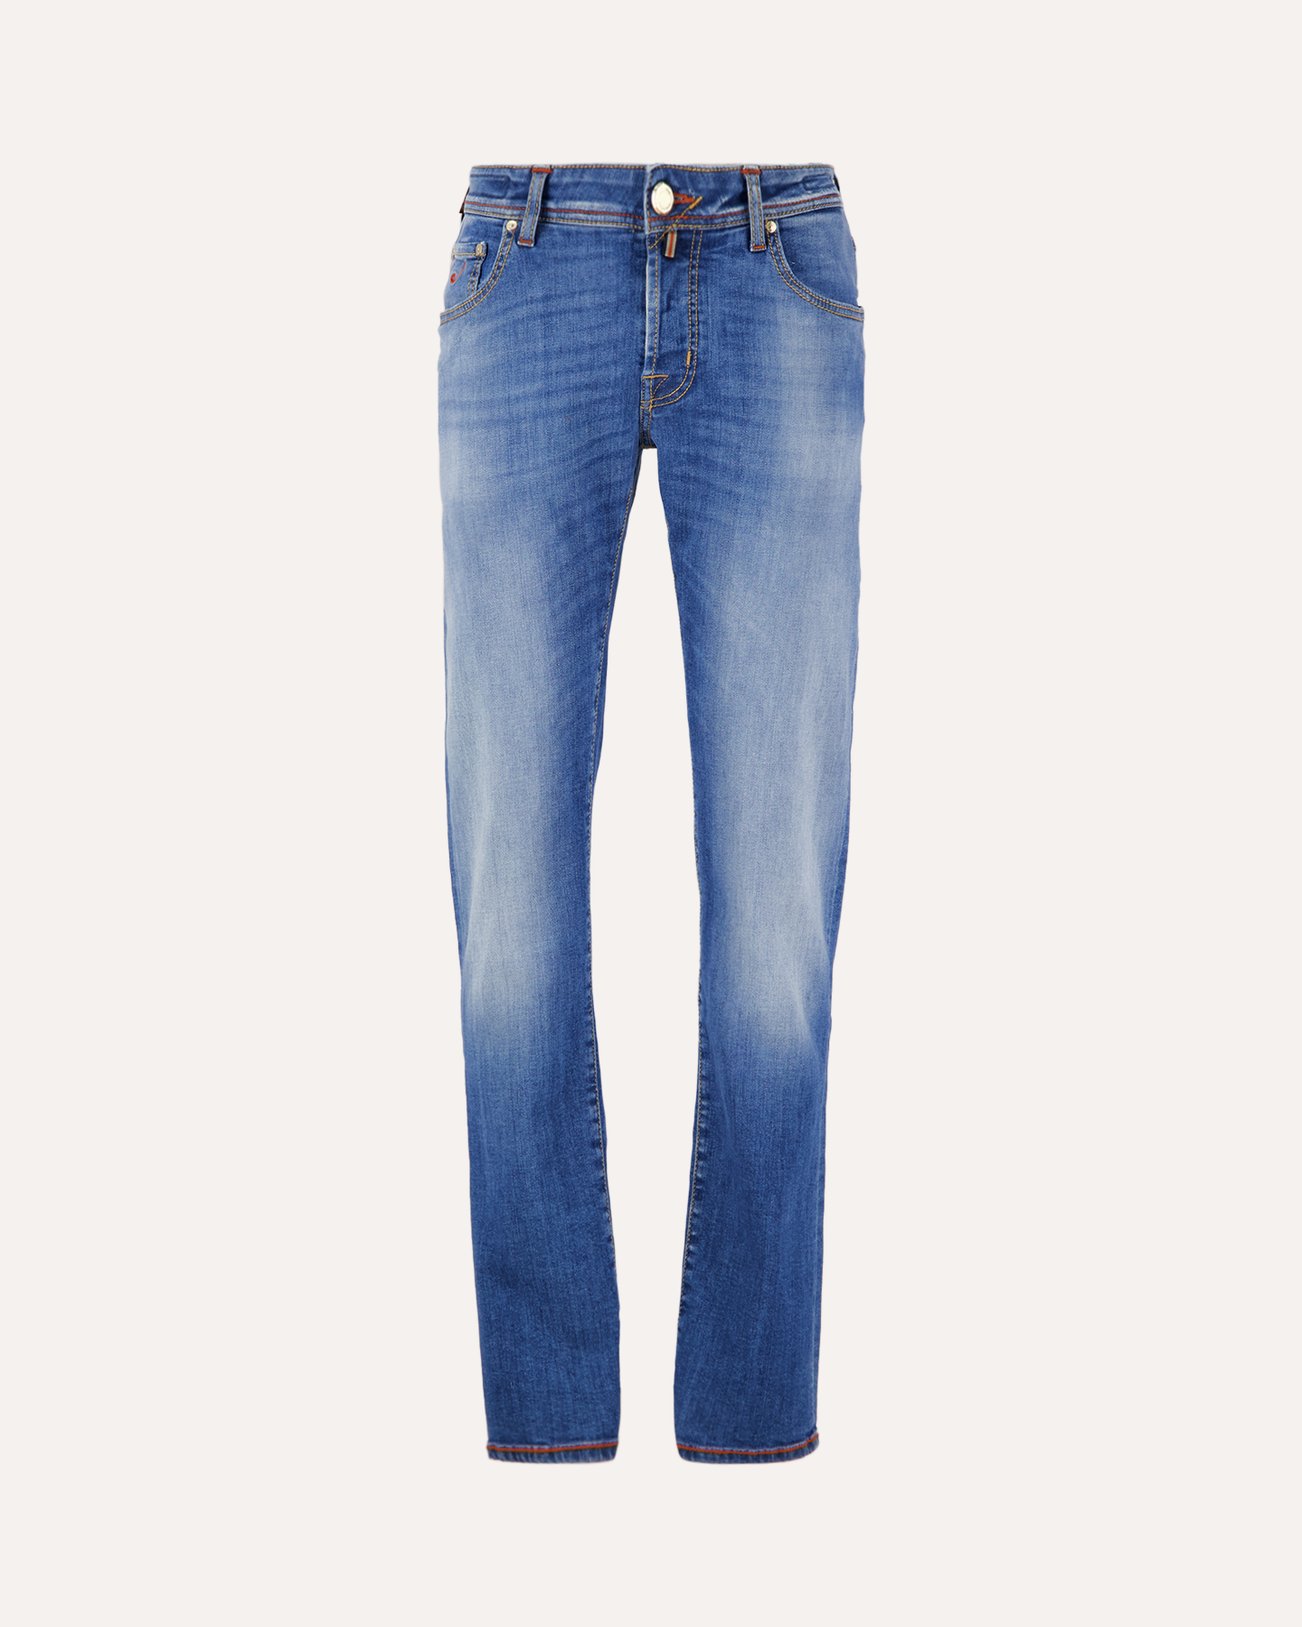 Jacob Cohen Nick Light-Blue Selvedge Limited-Edition Jeans 737D DENIM 1